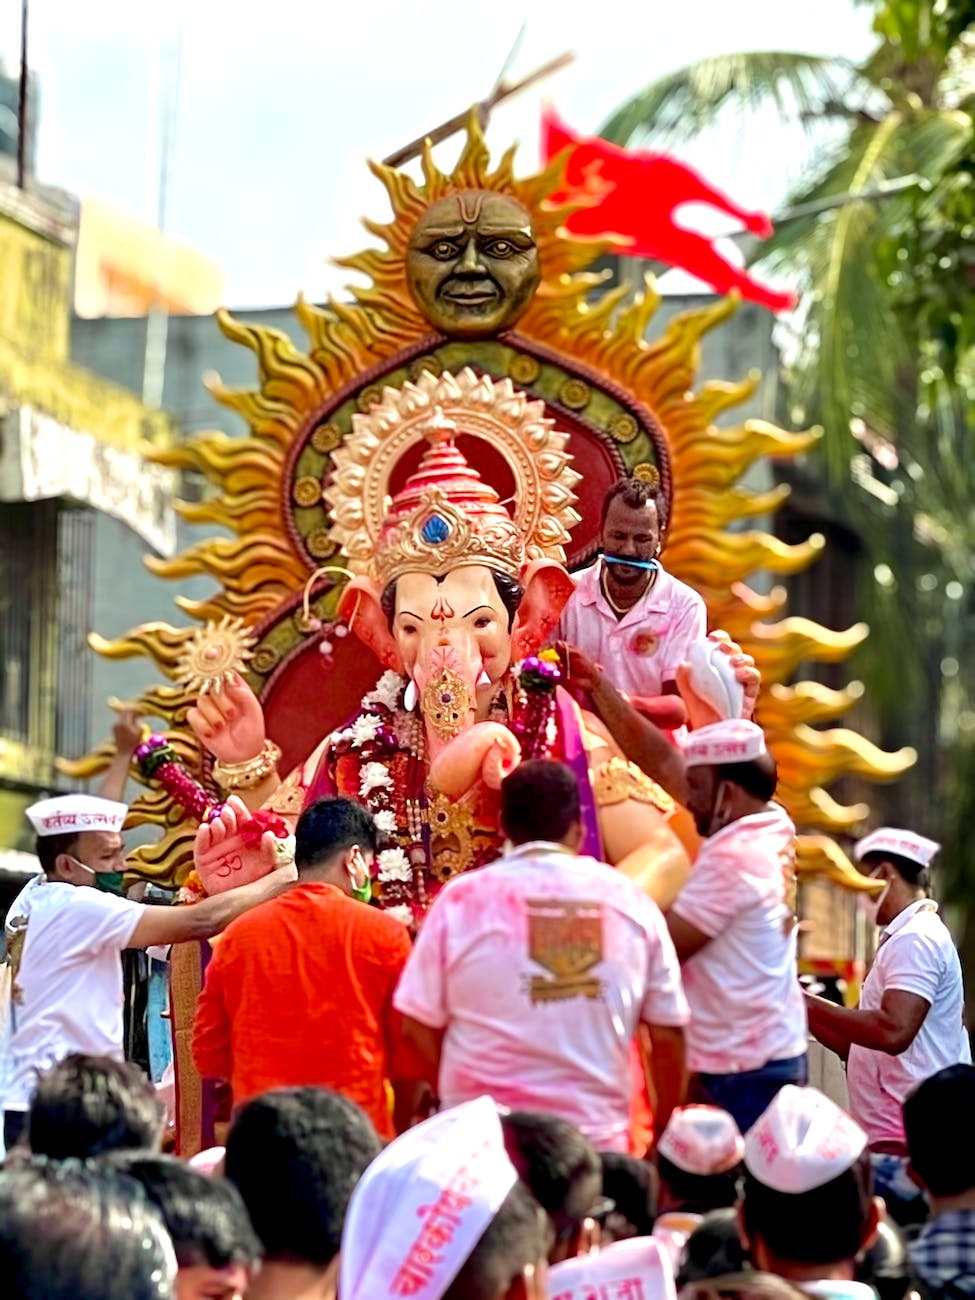 Lord Ganesh - The Hindu Festival